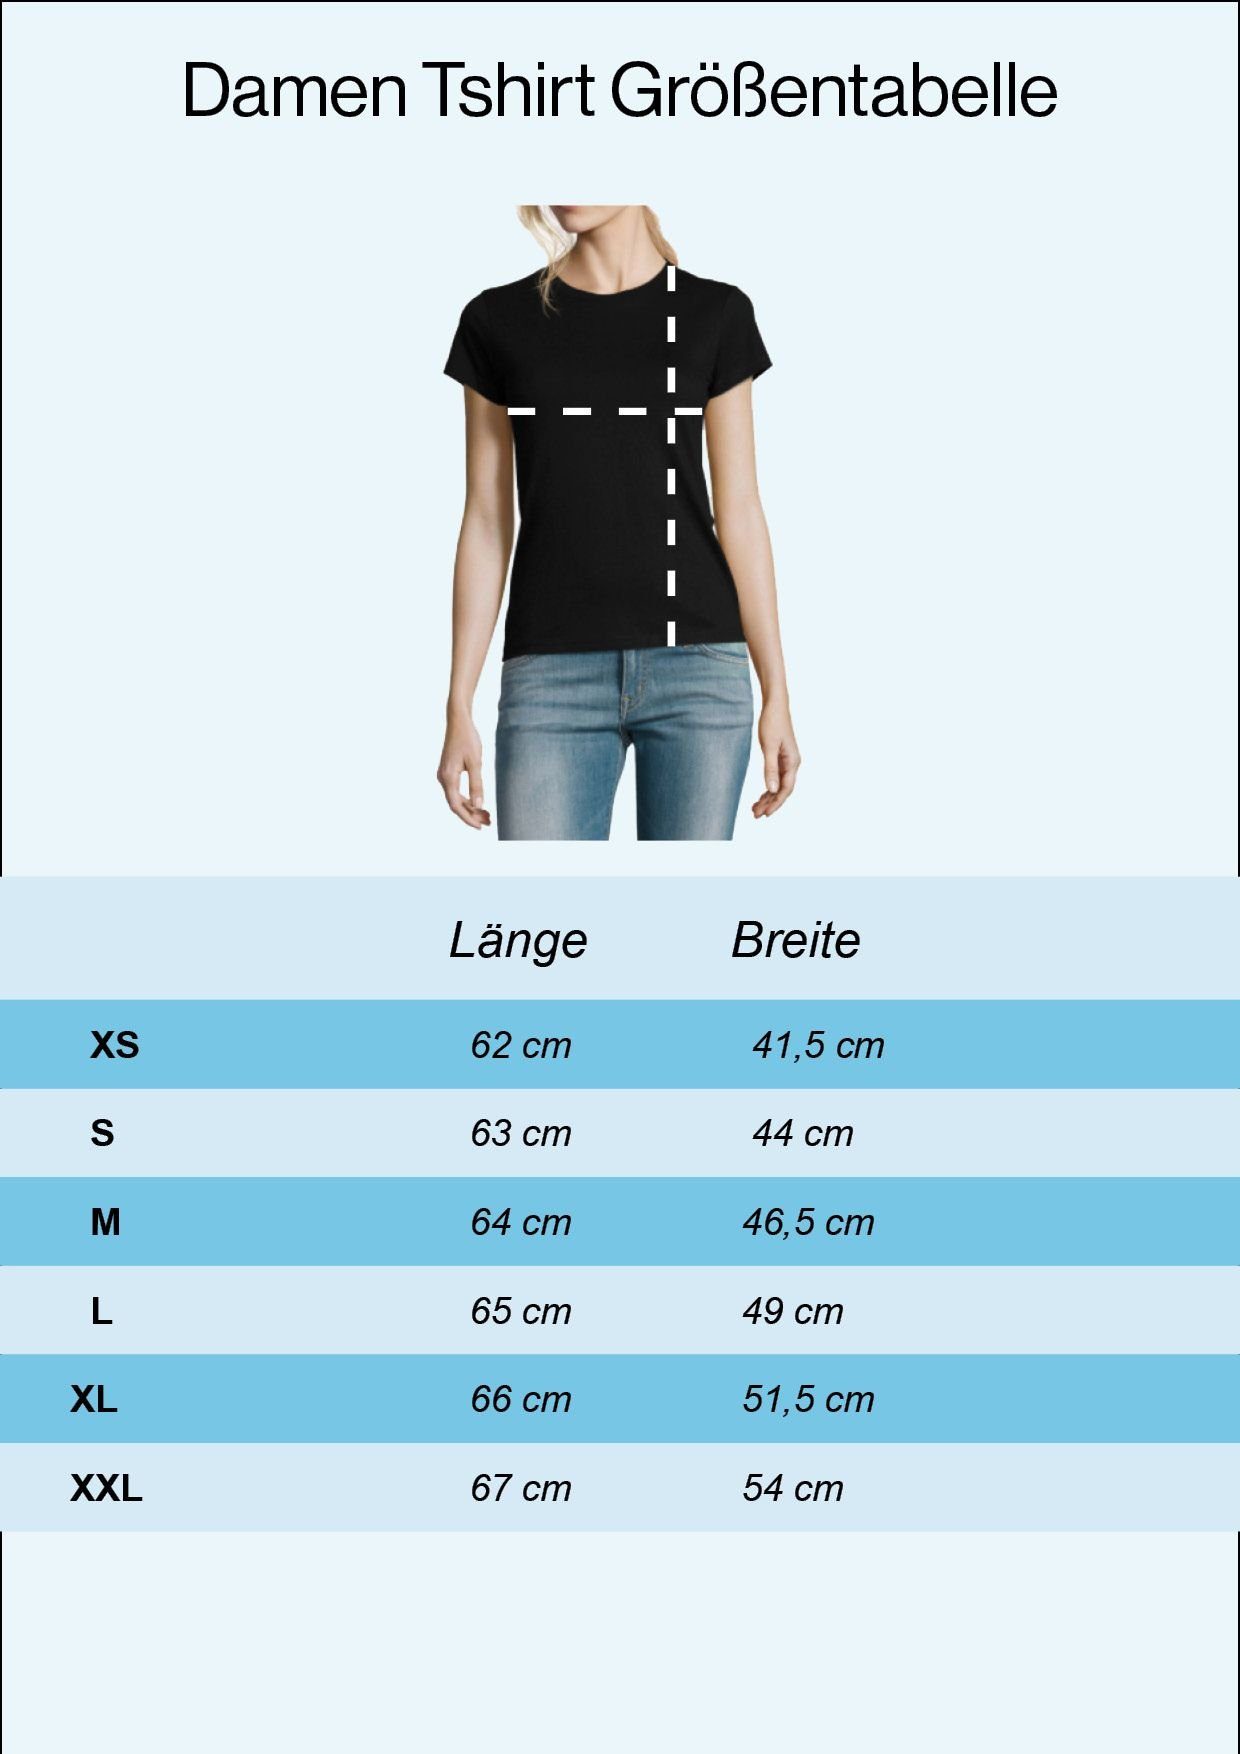 What don't Grau Damen Zauberwürfel T-Shirt Part you Print Shirt modischem Understand Mit Designz Youth